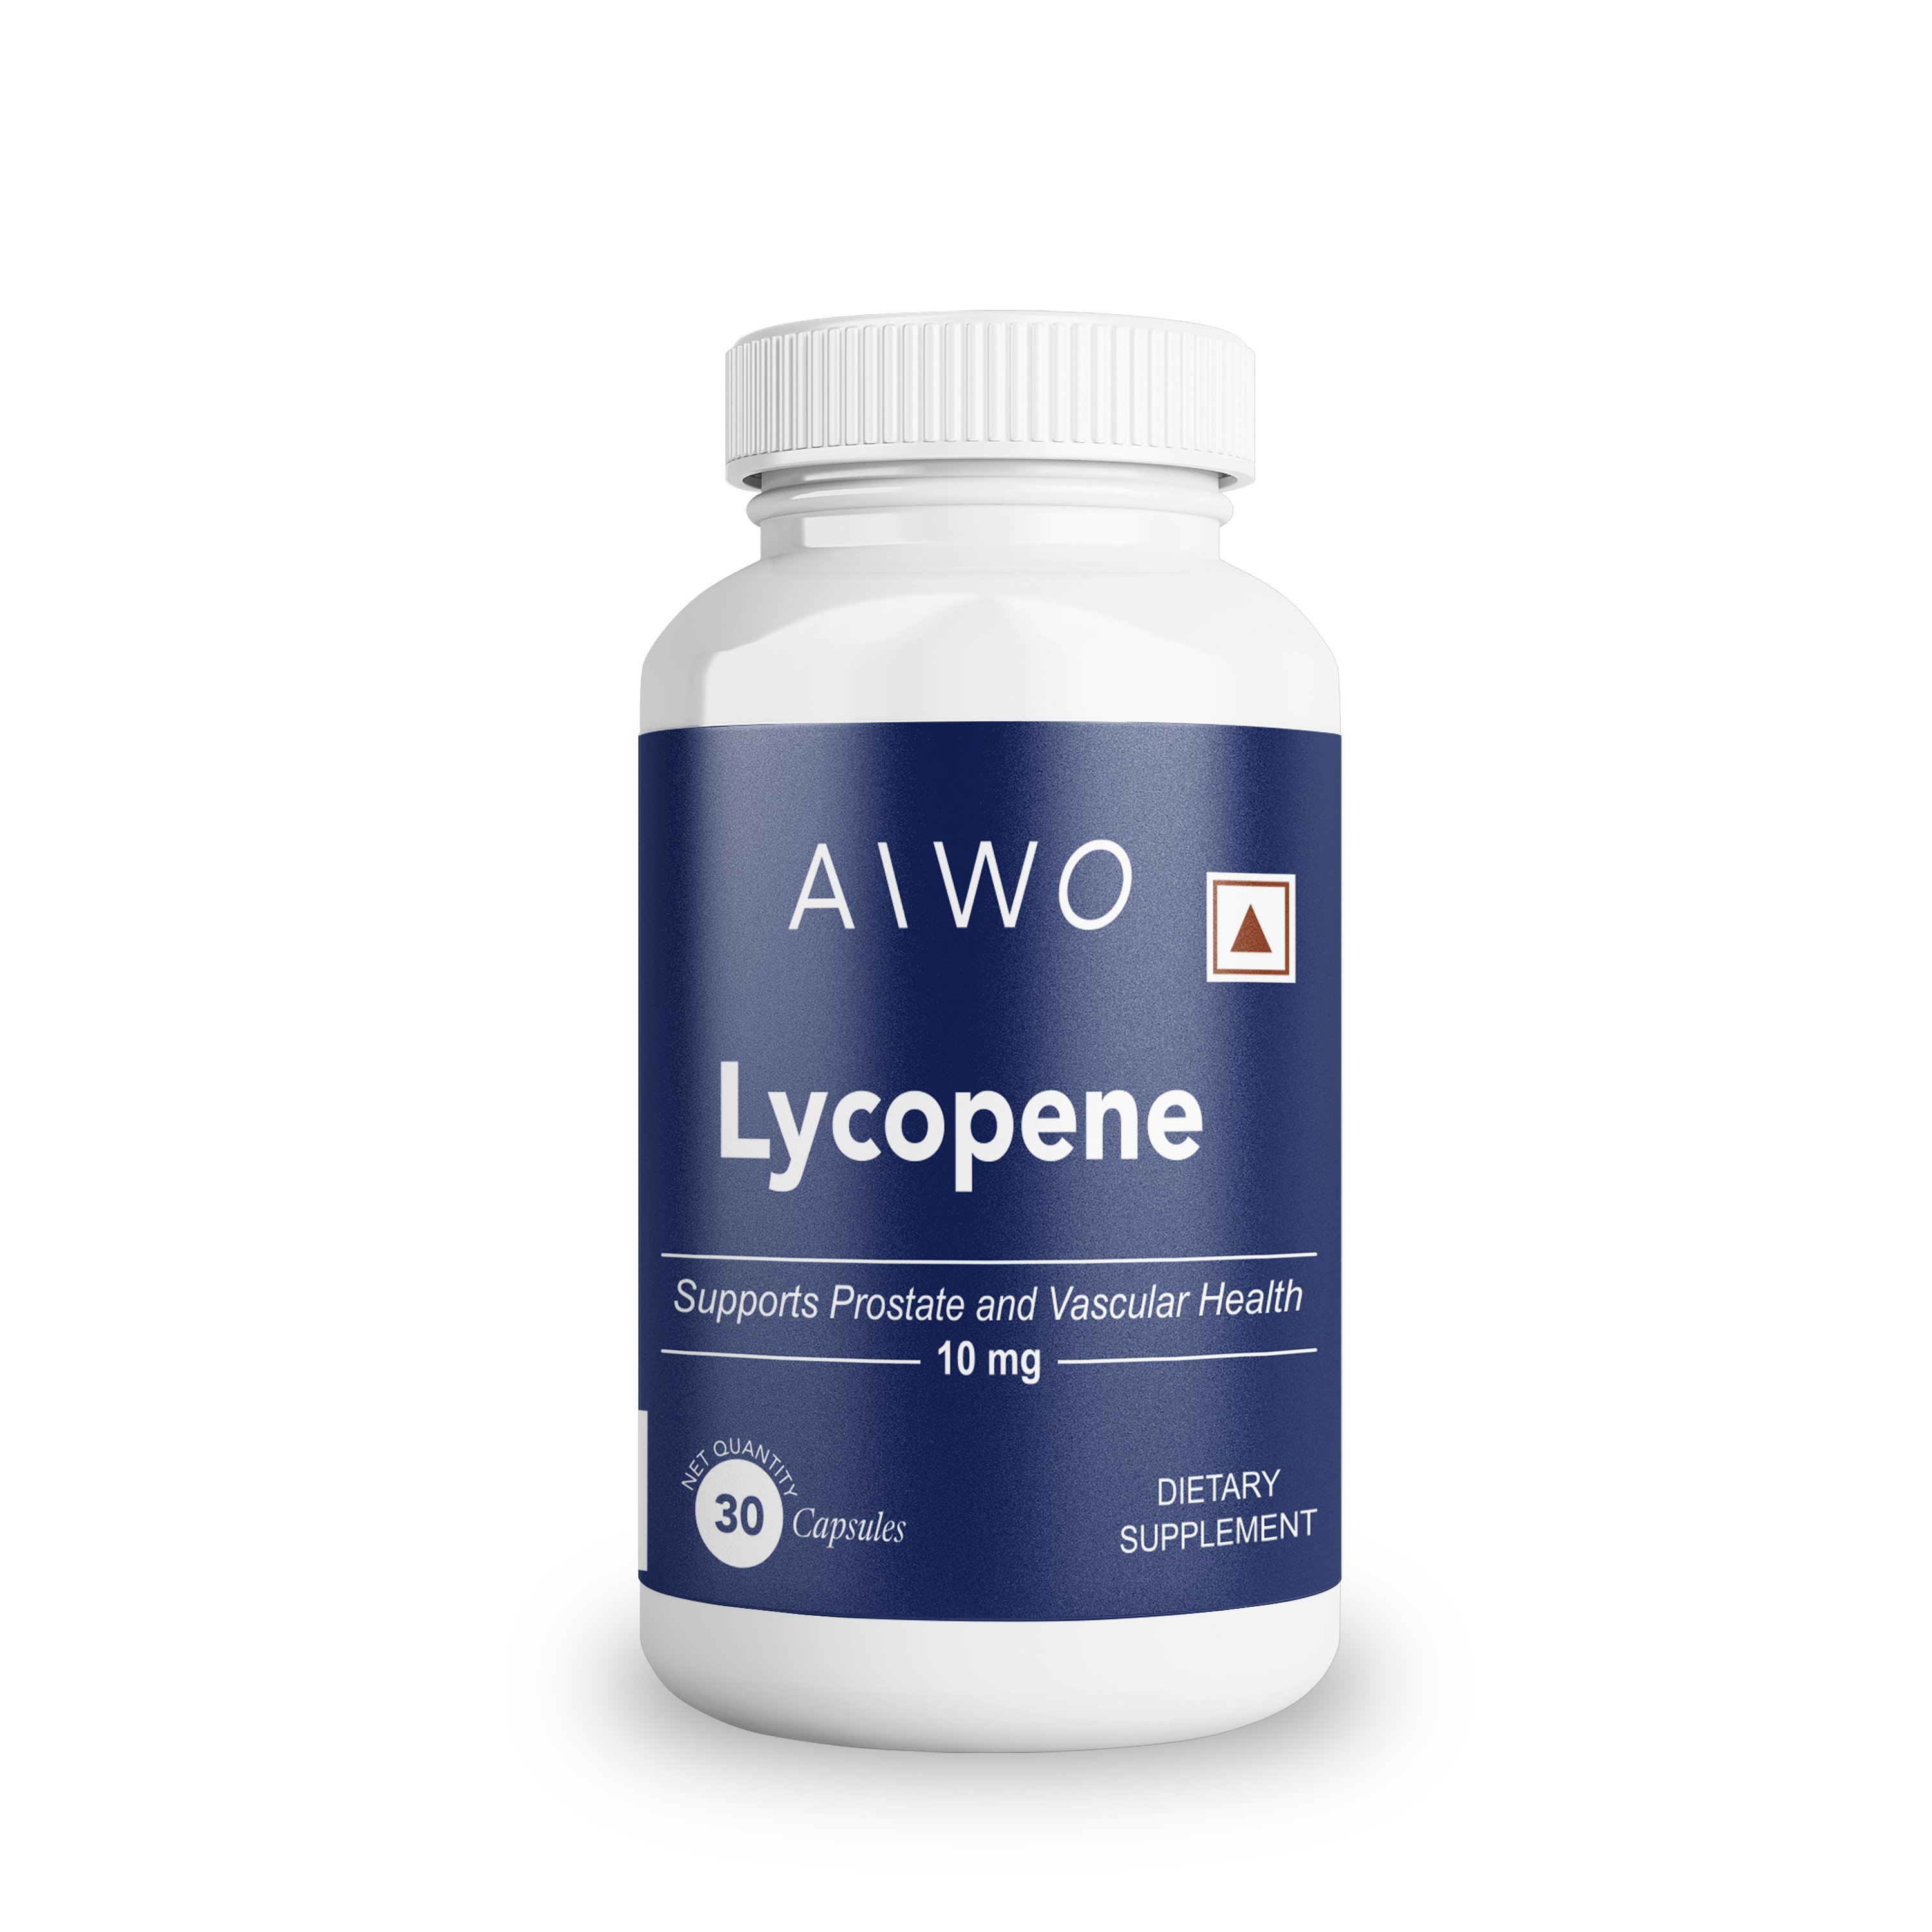 AIWO Lycopene 10 mg